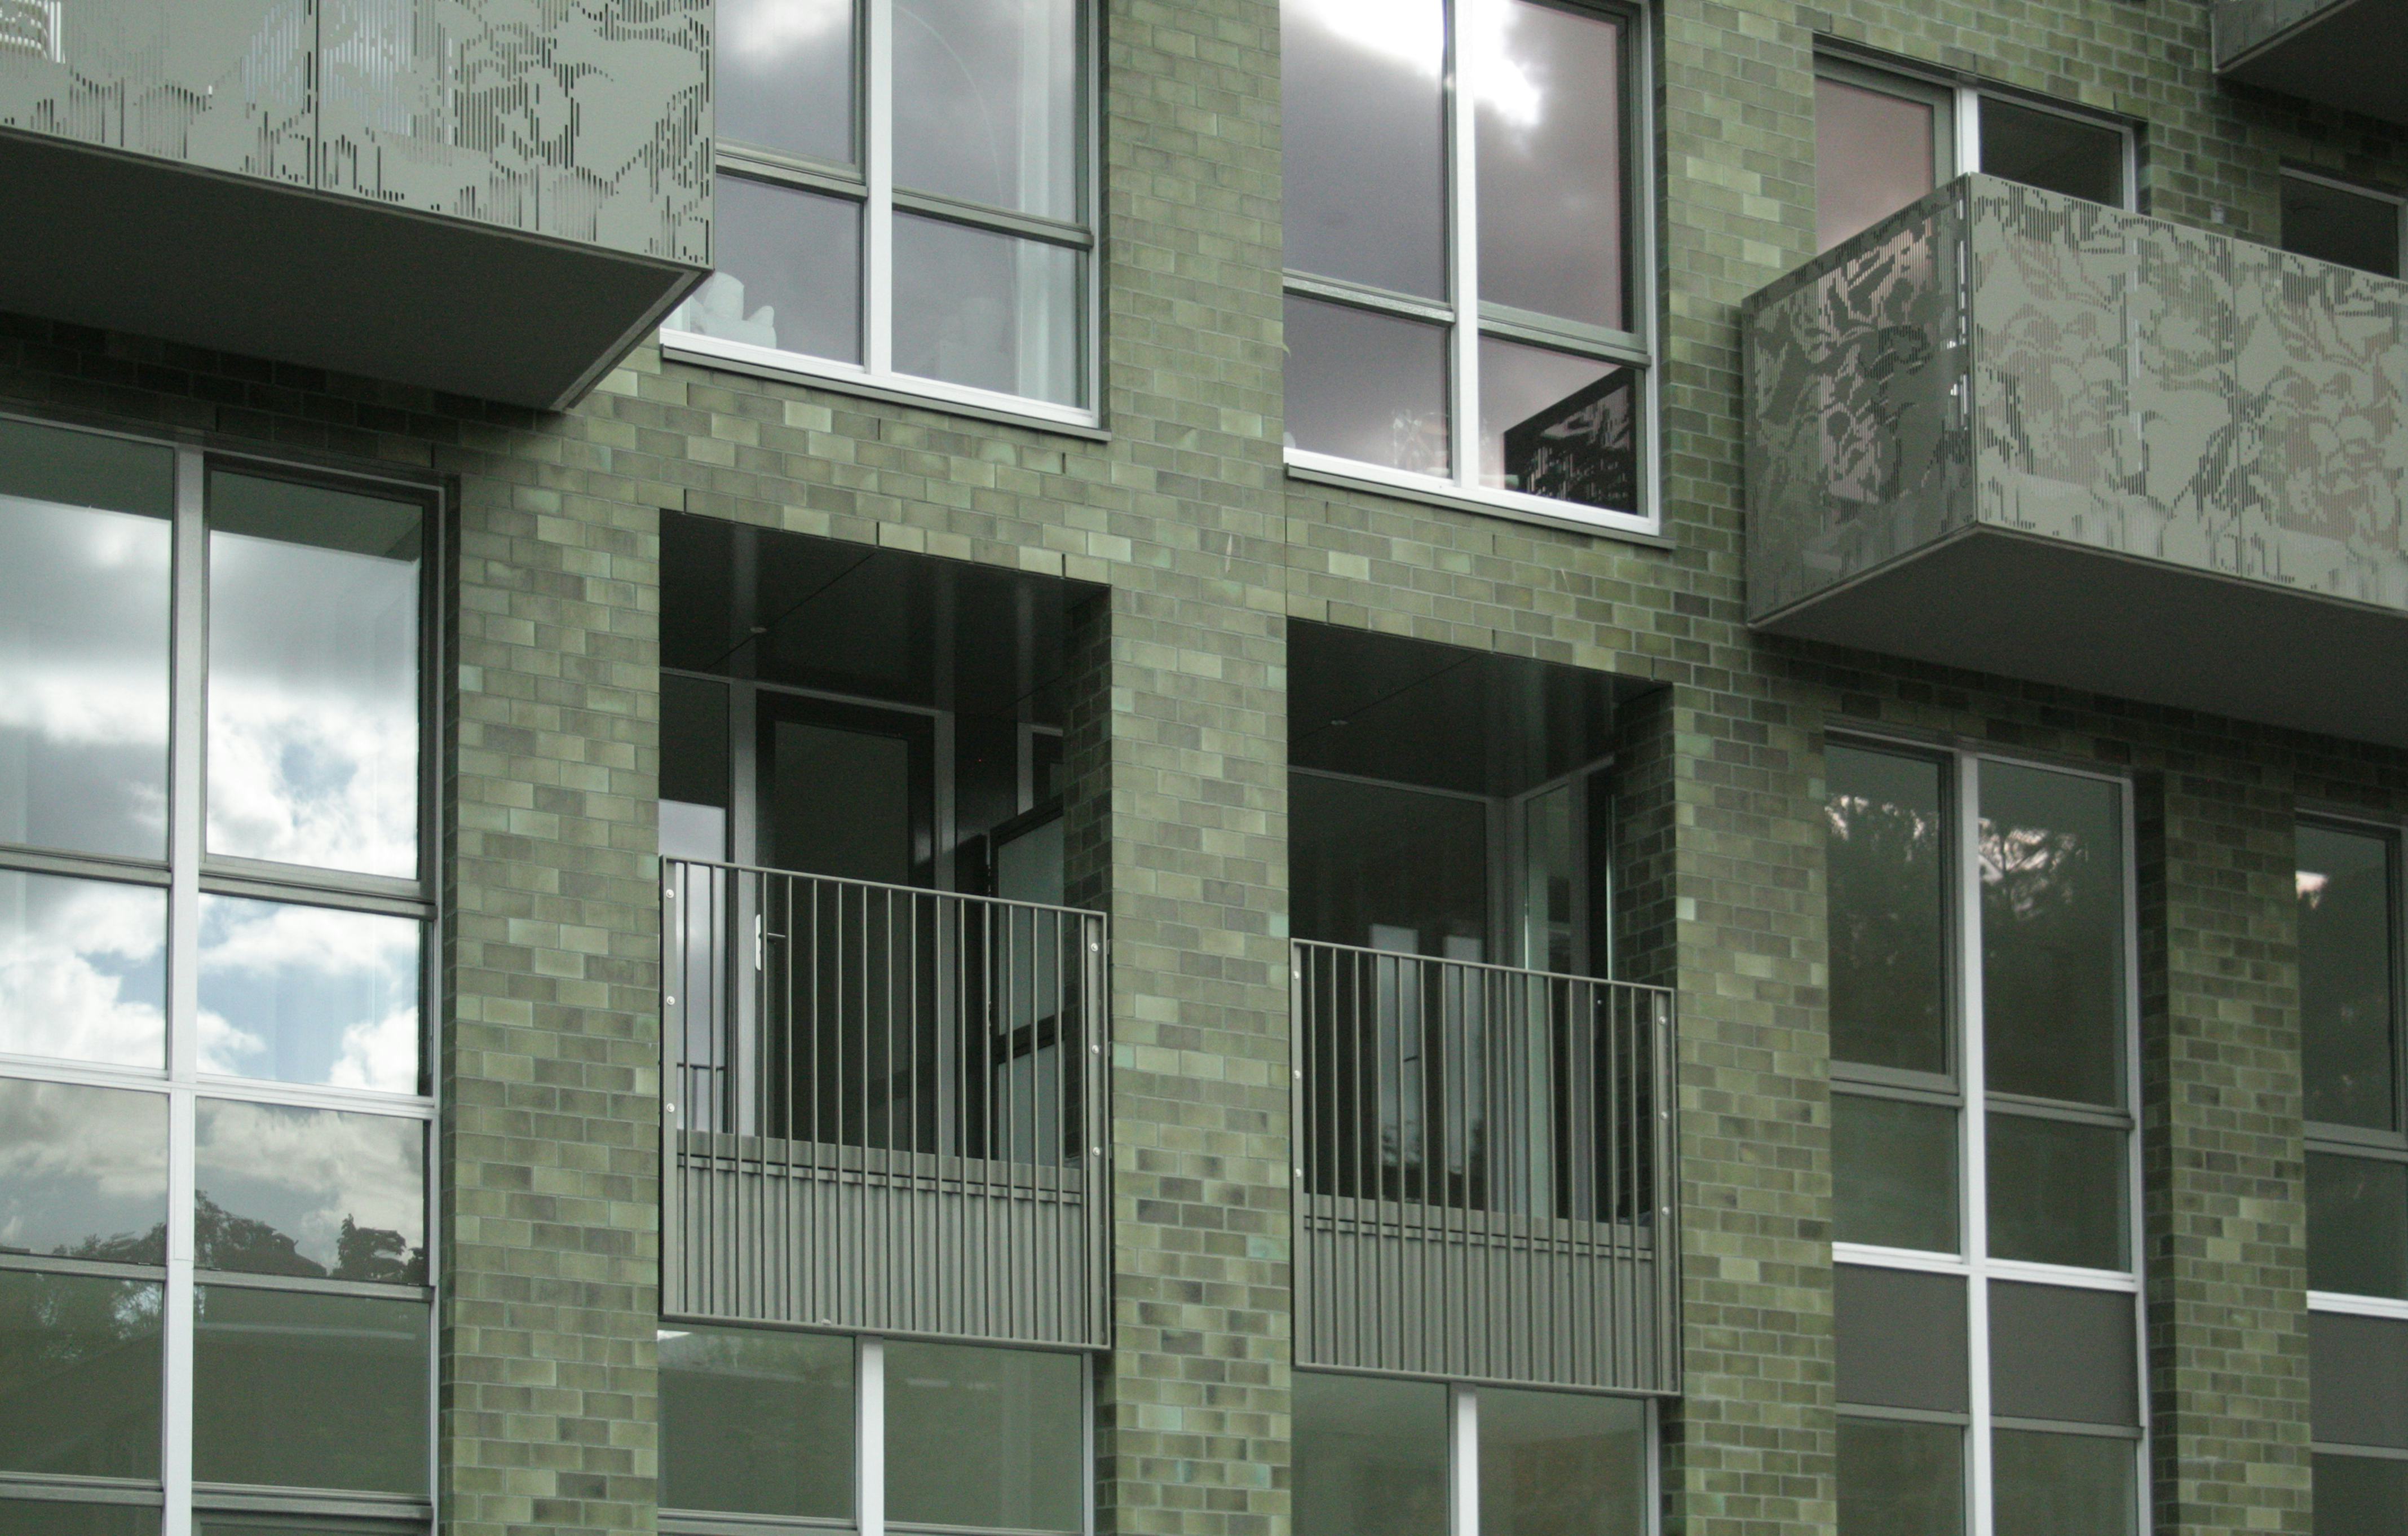 Voor dit project in het Scheepvaartkwartier in Amsterdam koos AWG Architecten uit Antwerpen geglazuurde strengpersstenen in combinatie met een zacht genuanceerde groene glazuur